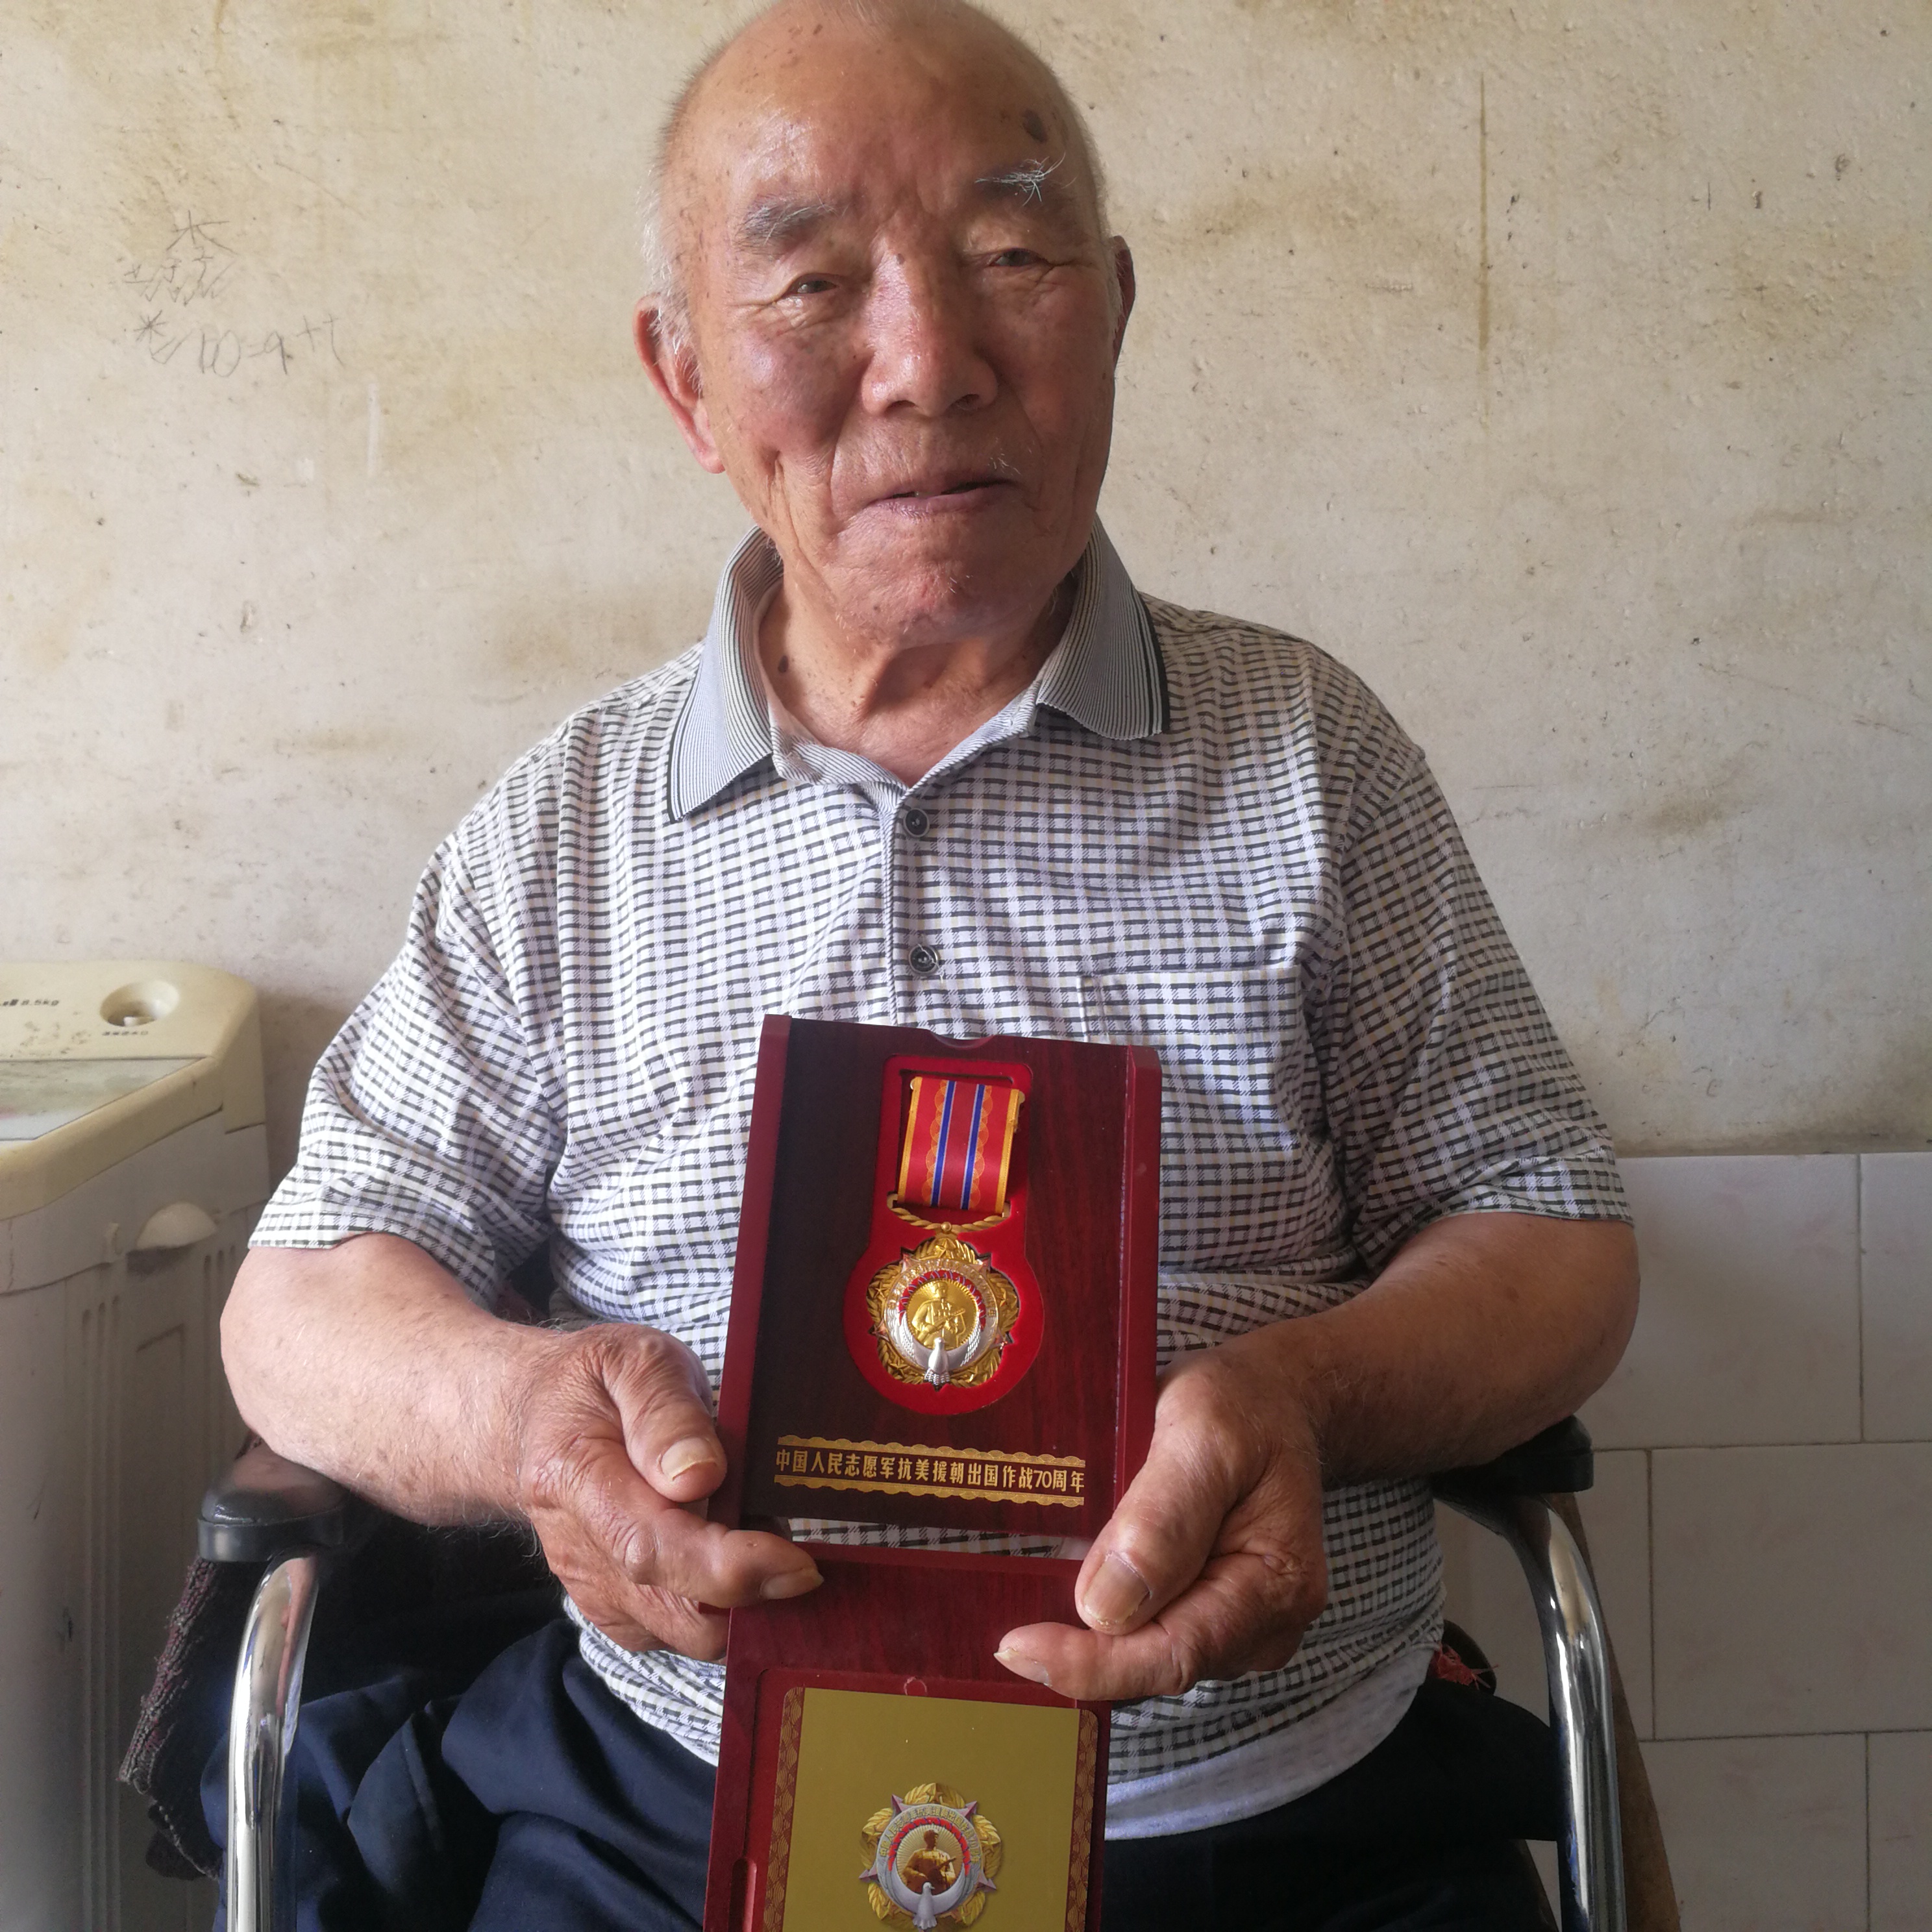 饶弟宽老人展示他获得的中国人民志愿军抗美援朝出国作战70周年纪念章。长沙晚报全媒体记者 黎铁桥摄